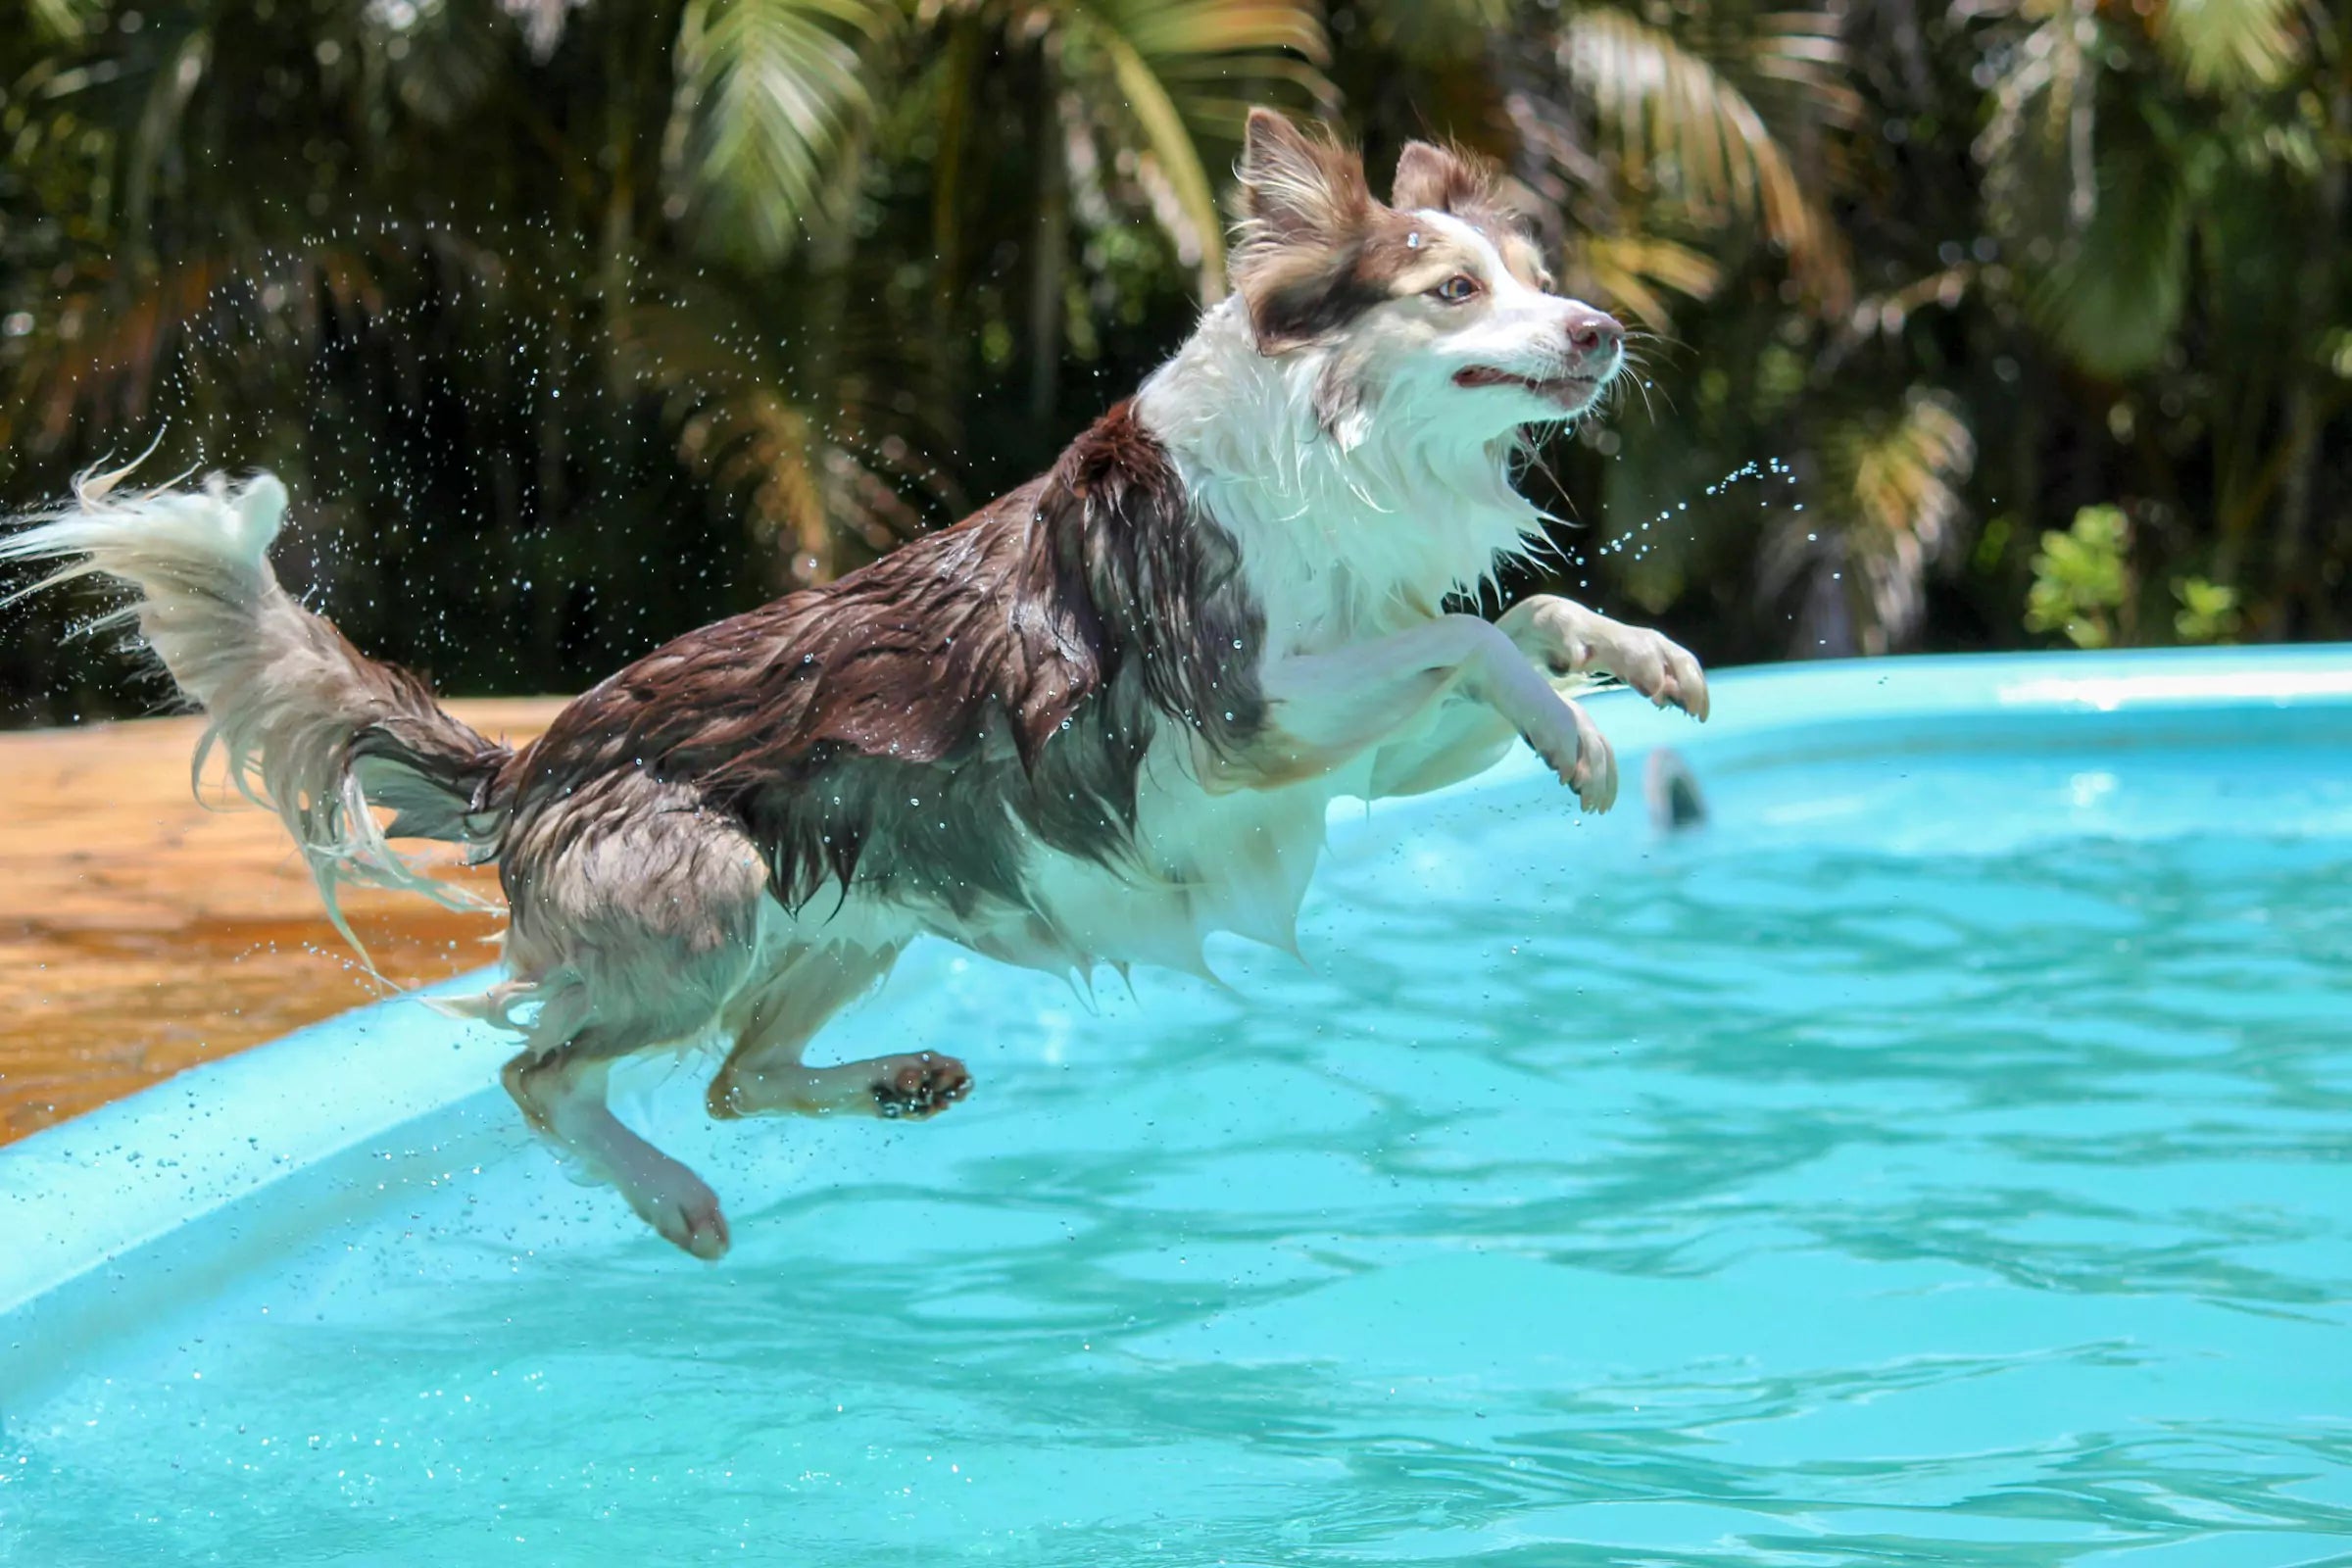 Do Dogs Know How to Swim